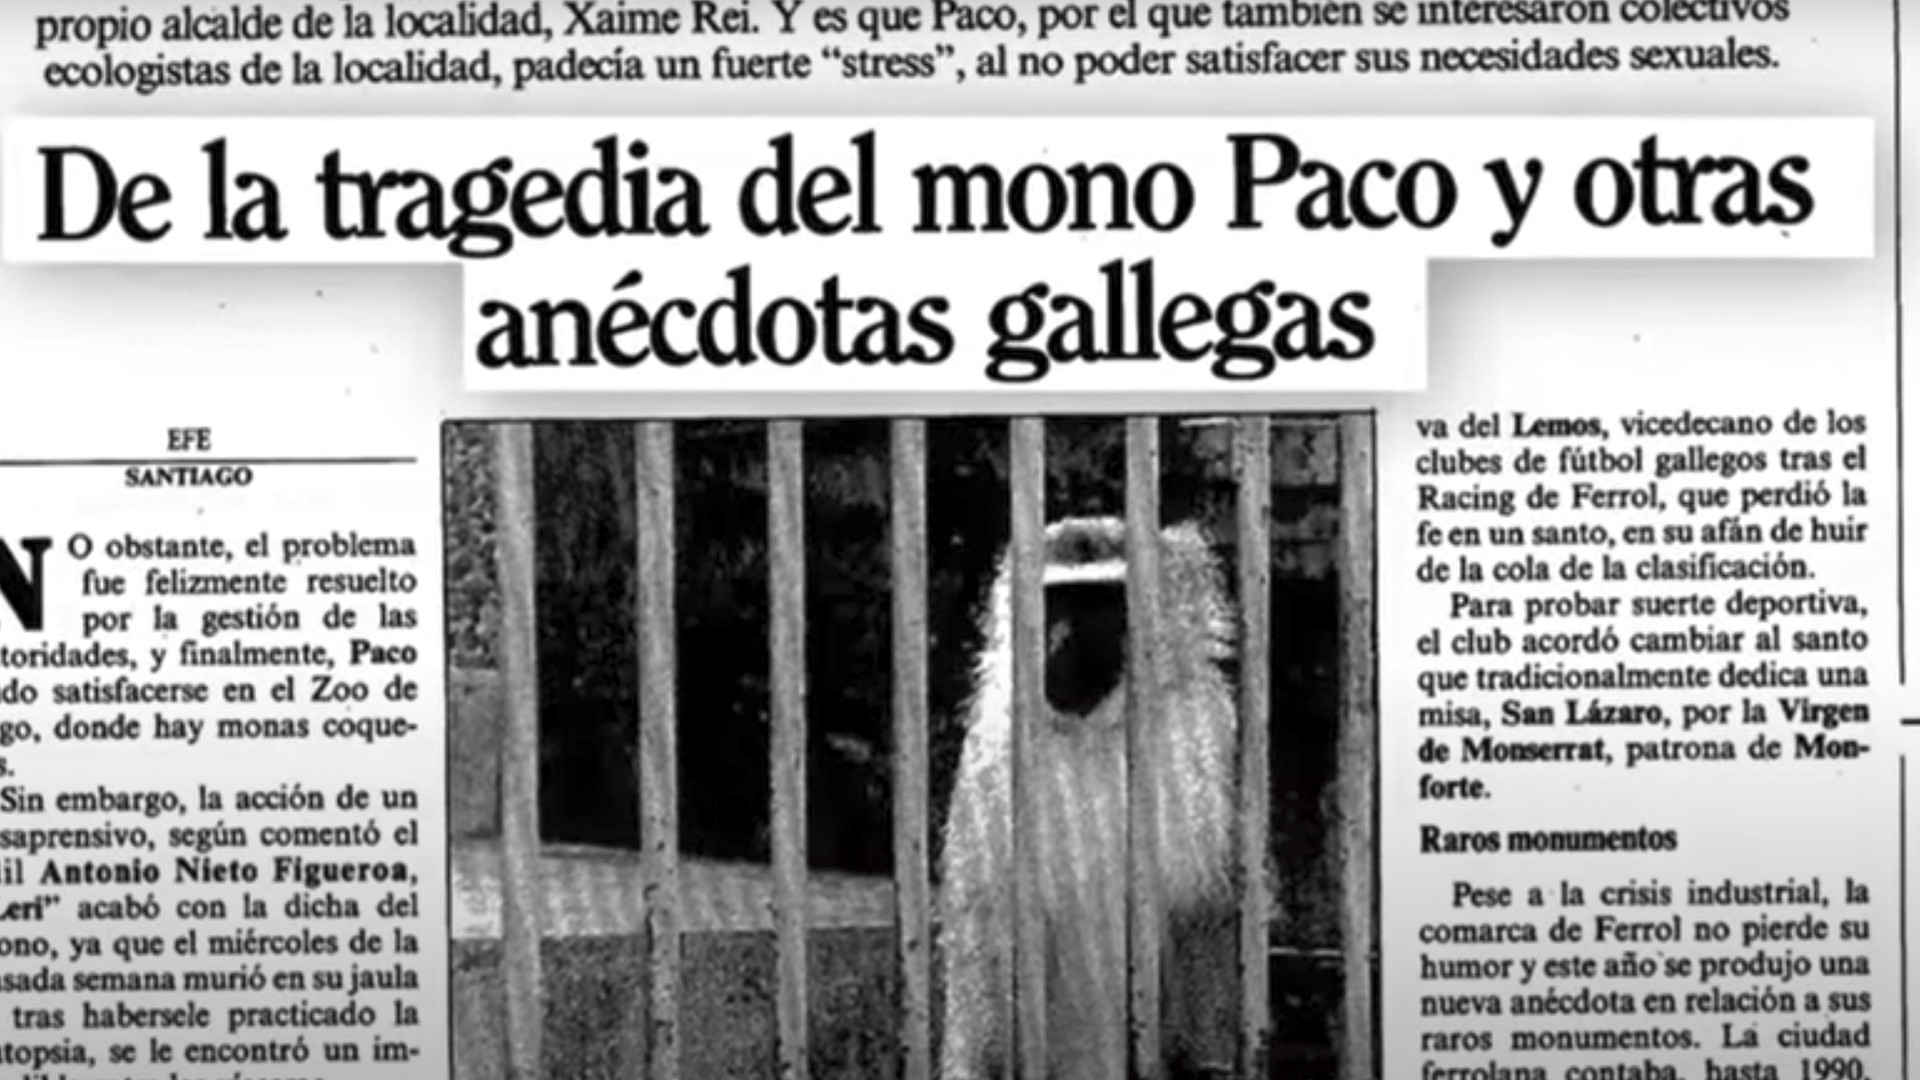 Imagen del documental El mono Paco